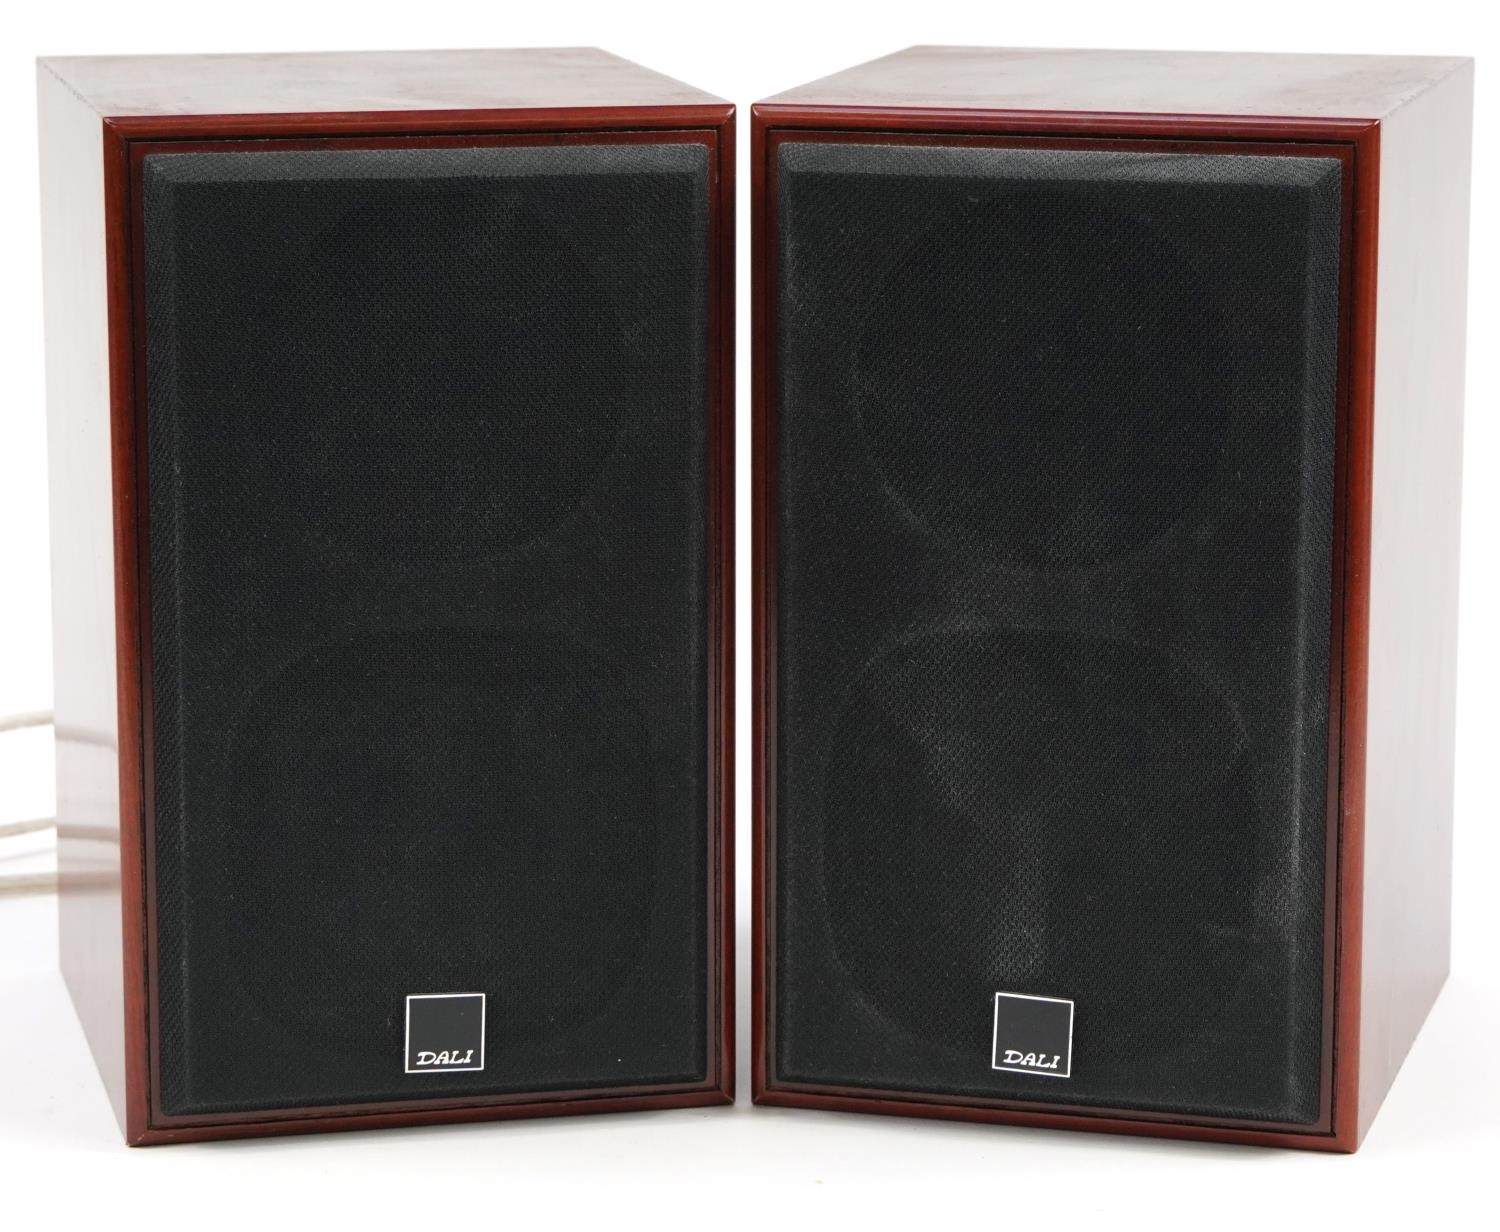 Pair of Dali Royal Menuet II shelf speakers, serial number 325381 